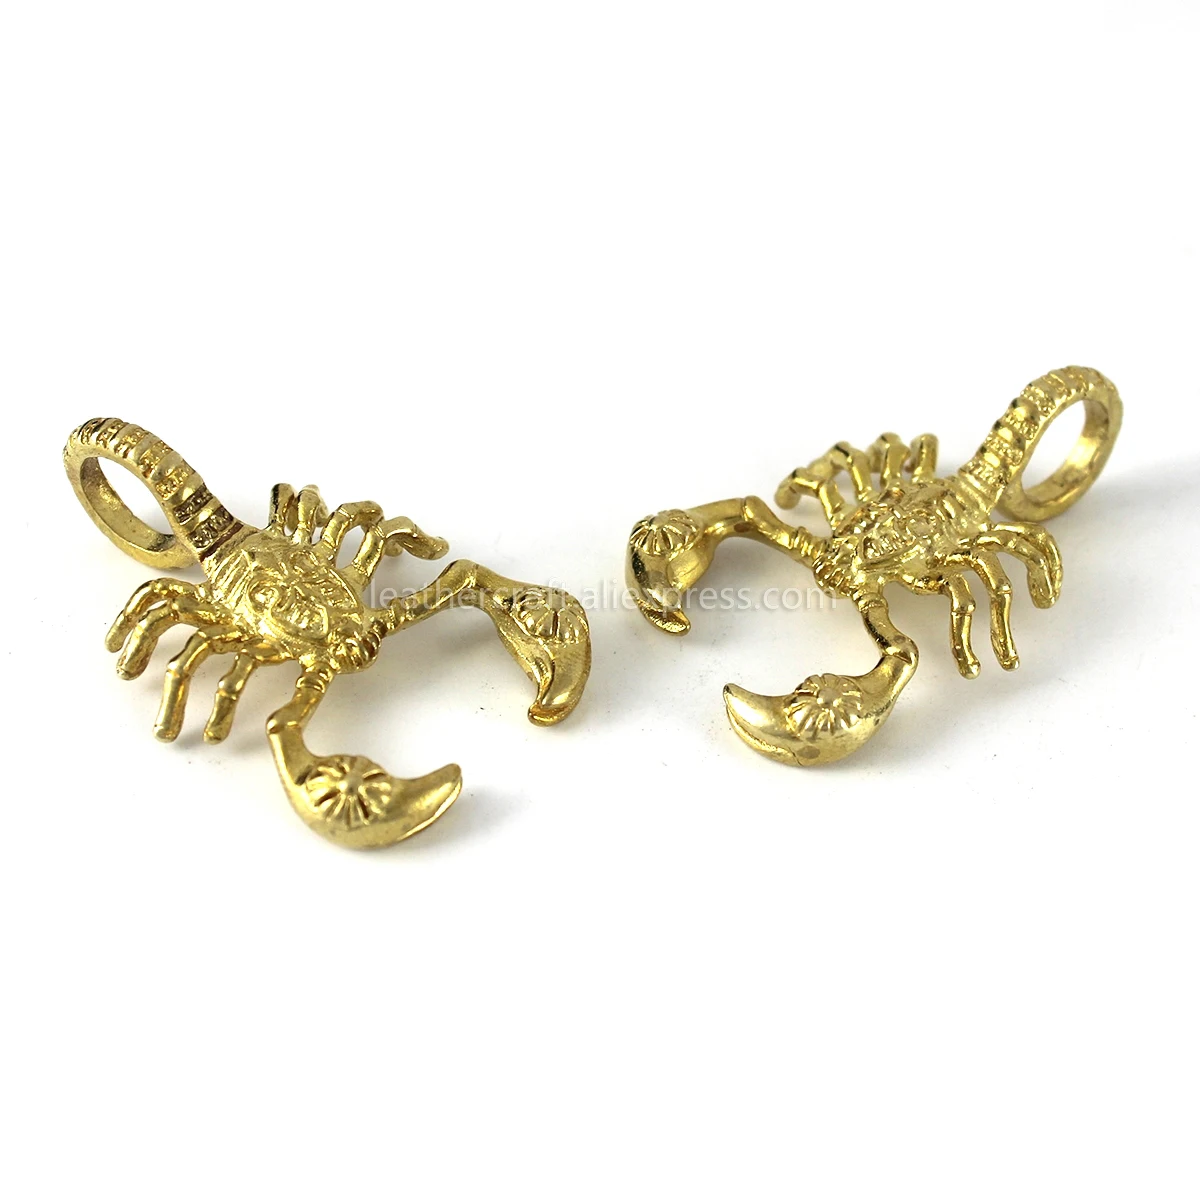 1 шт. латунные подвески Скорпион насекомое ожерелье ювелирные изделия Кожа ремесло сумка кошелек кожаный ремень украшения части